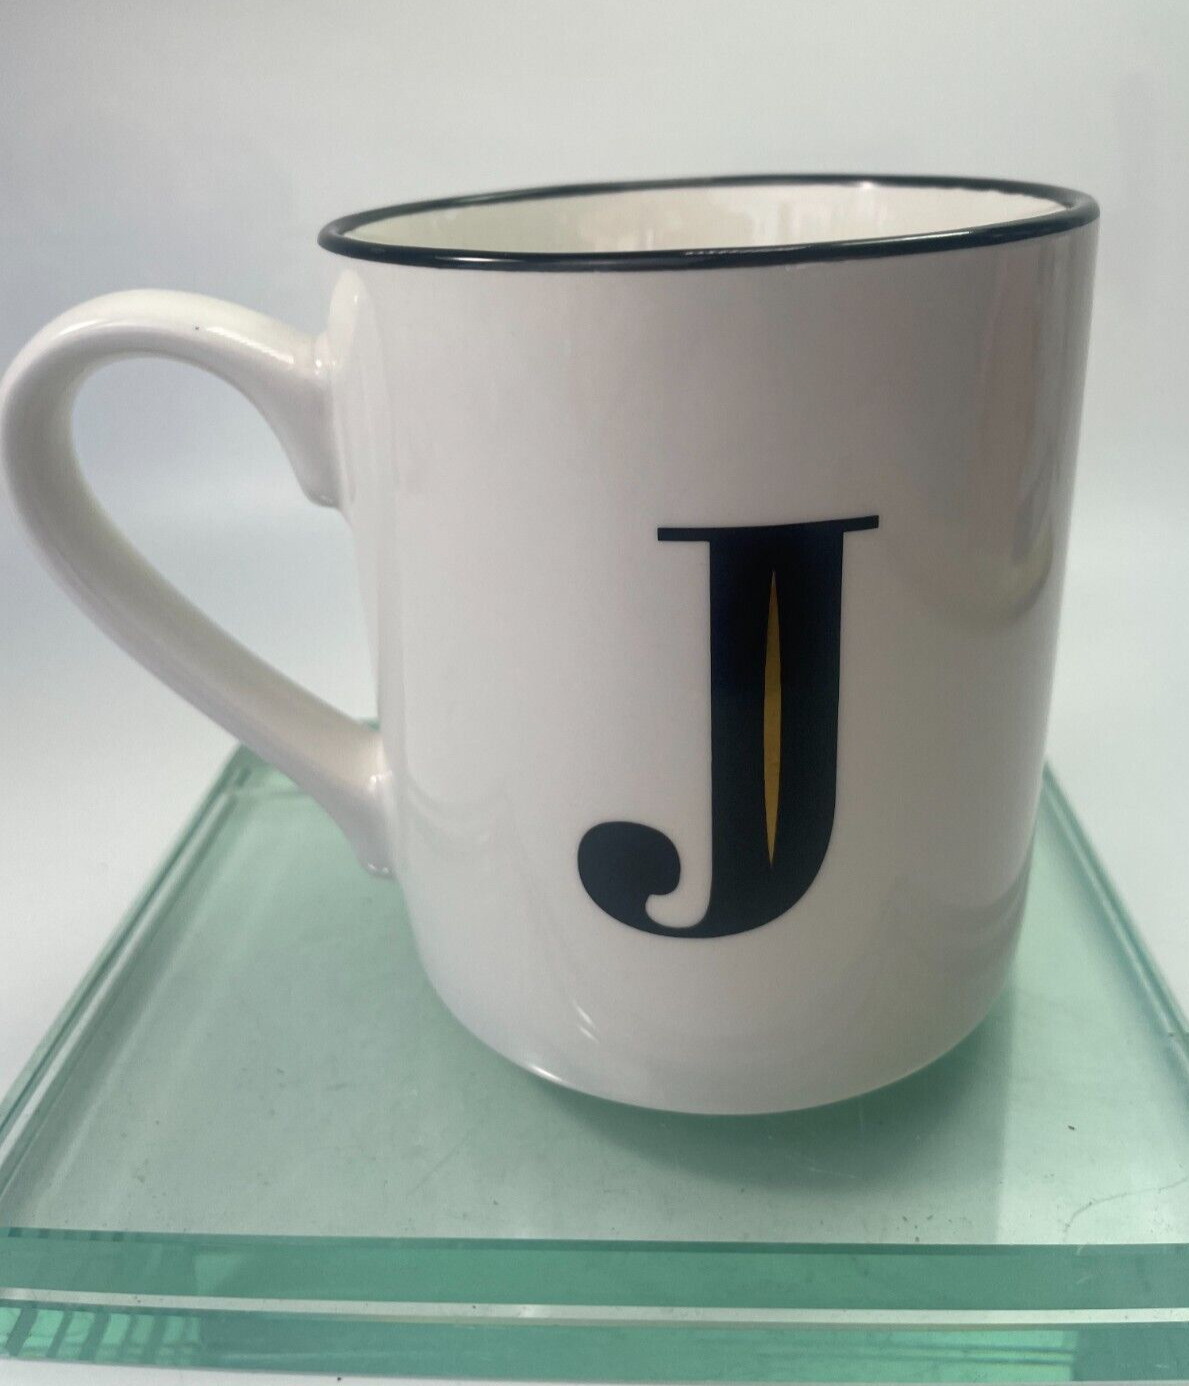 Threshold Monogram Initial J Coffee Mug 16 oz Personalized Black White Cup B12